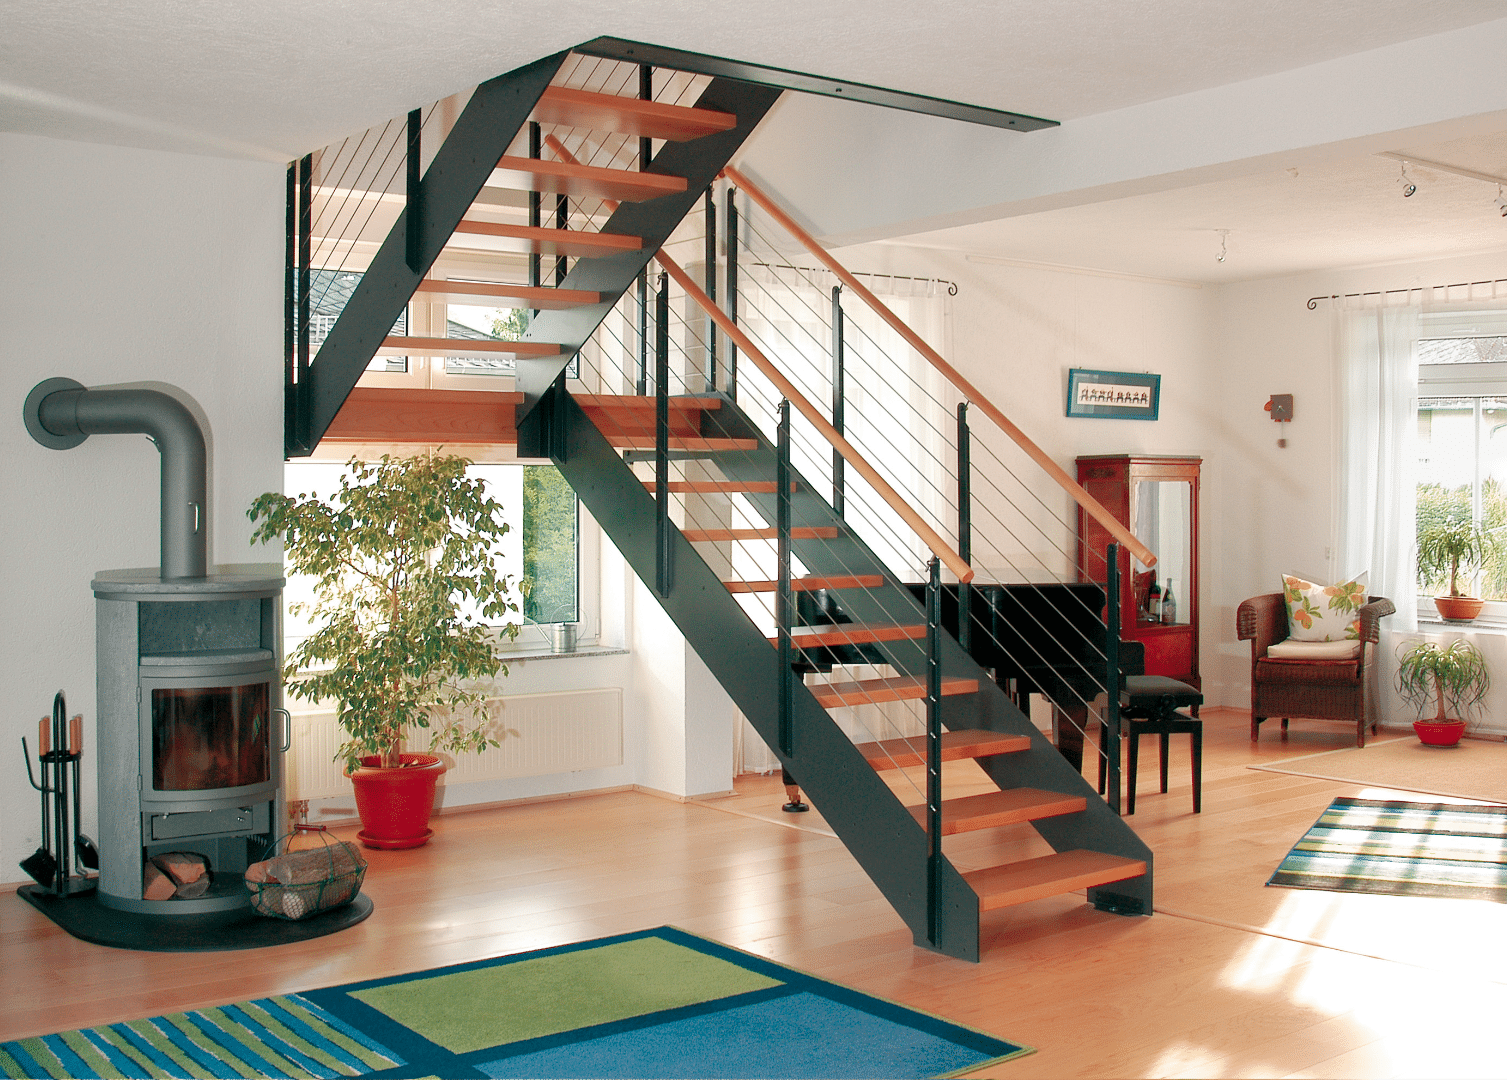 Wohnzimmer mit akzentreicher Treppe von Treppenmeister, bestehend aus Holzstufen, einem Handlauf aus Holz und einem Geländer aus gedrehten Drahtseilen, die der Stiege ihren Industrial Style verleihen.